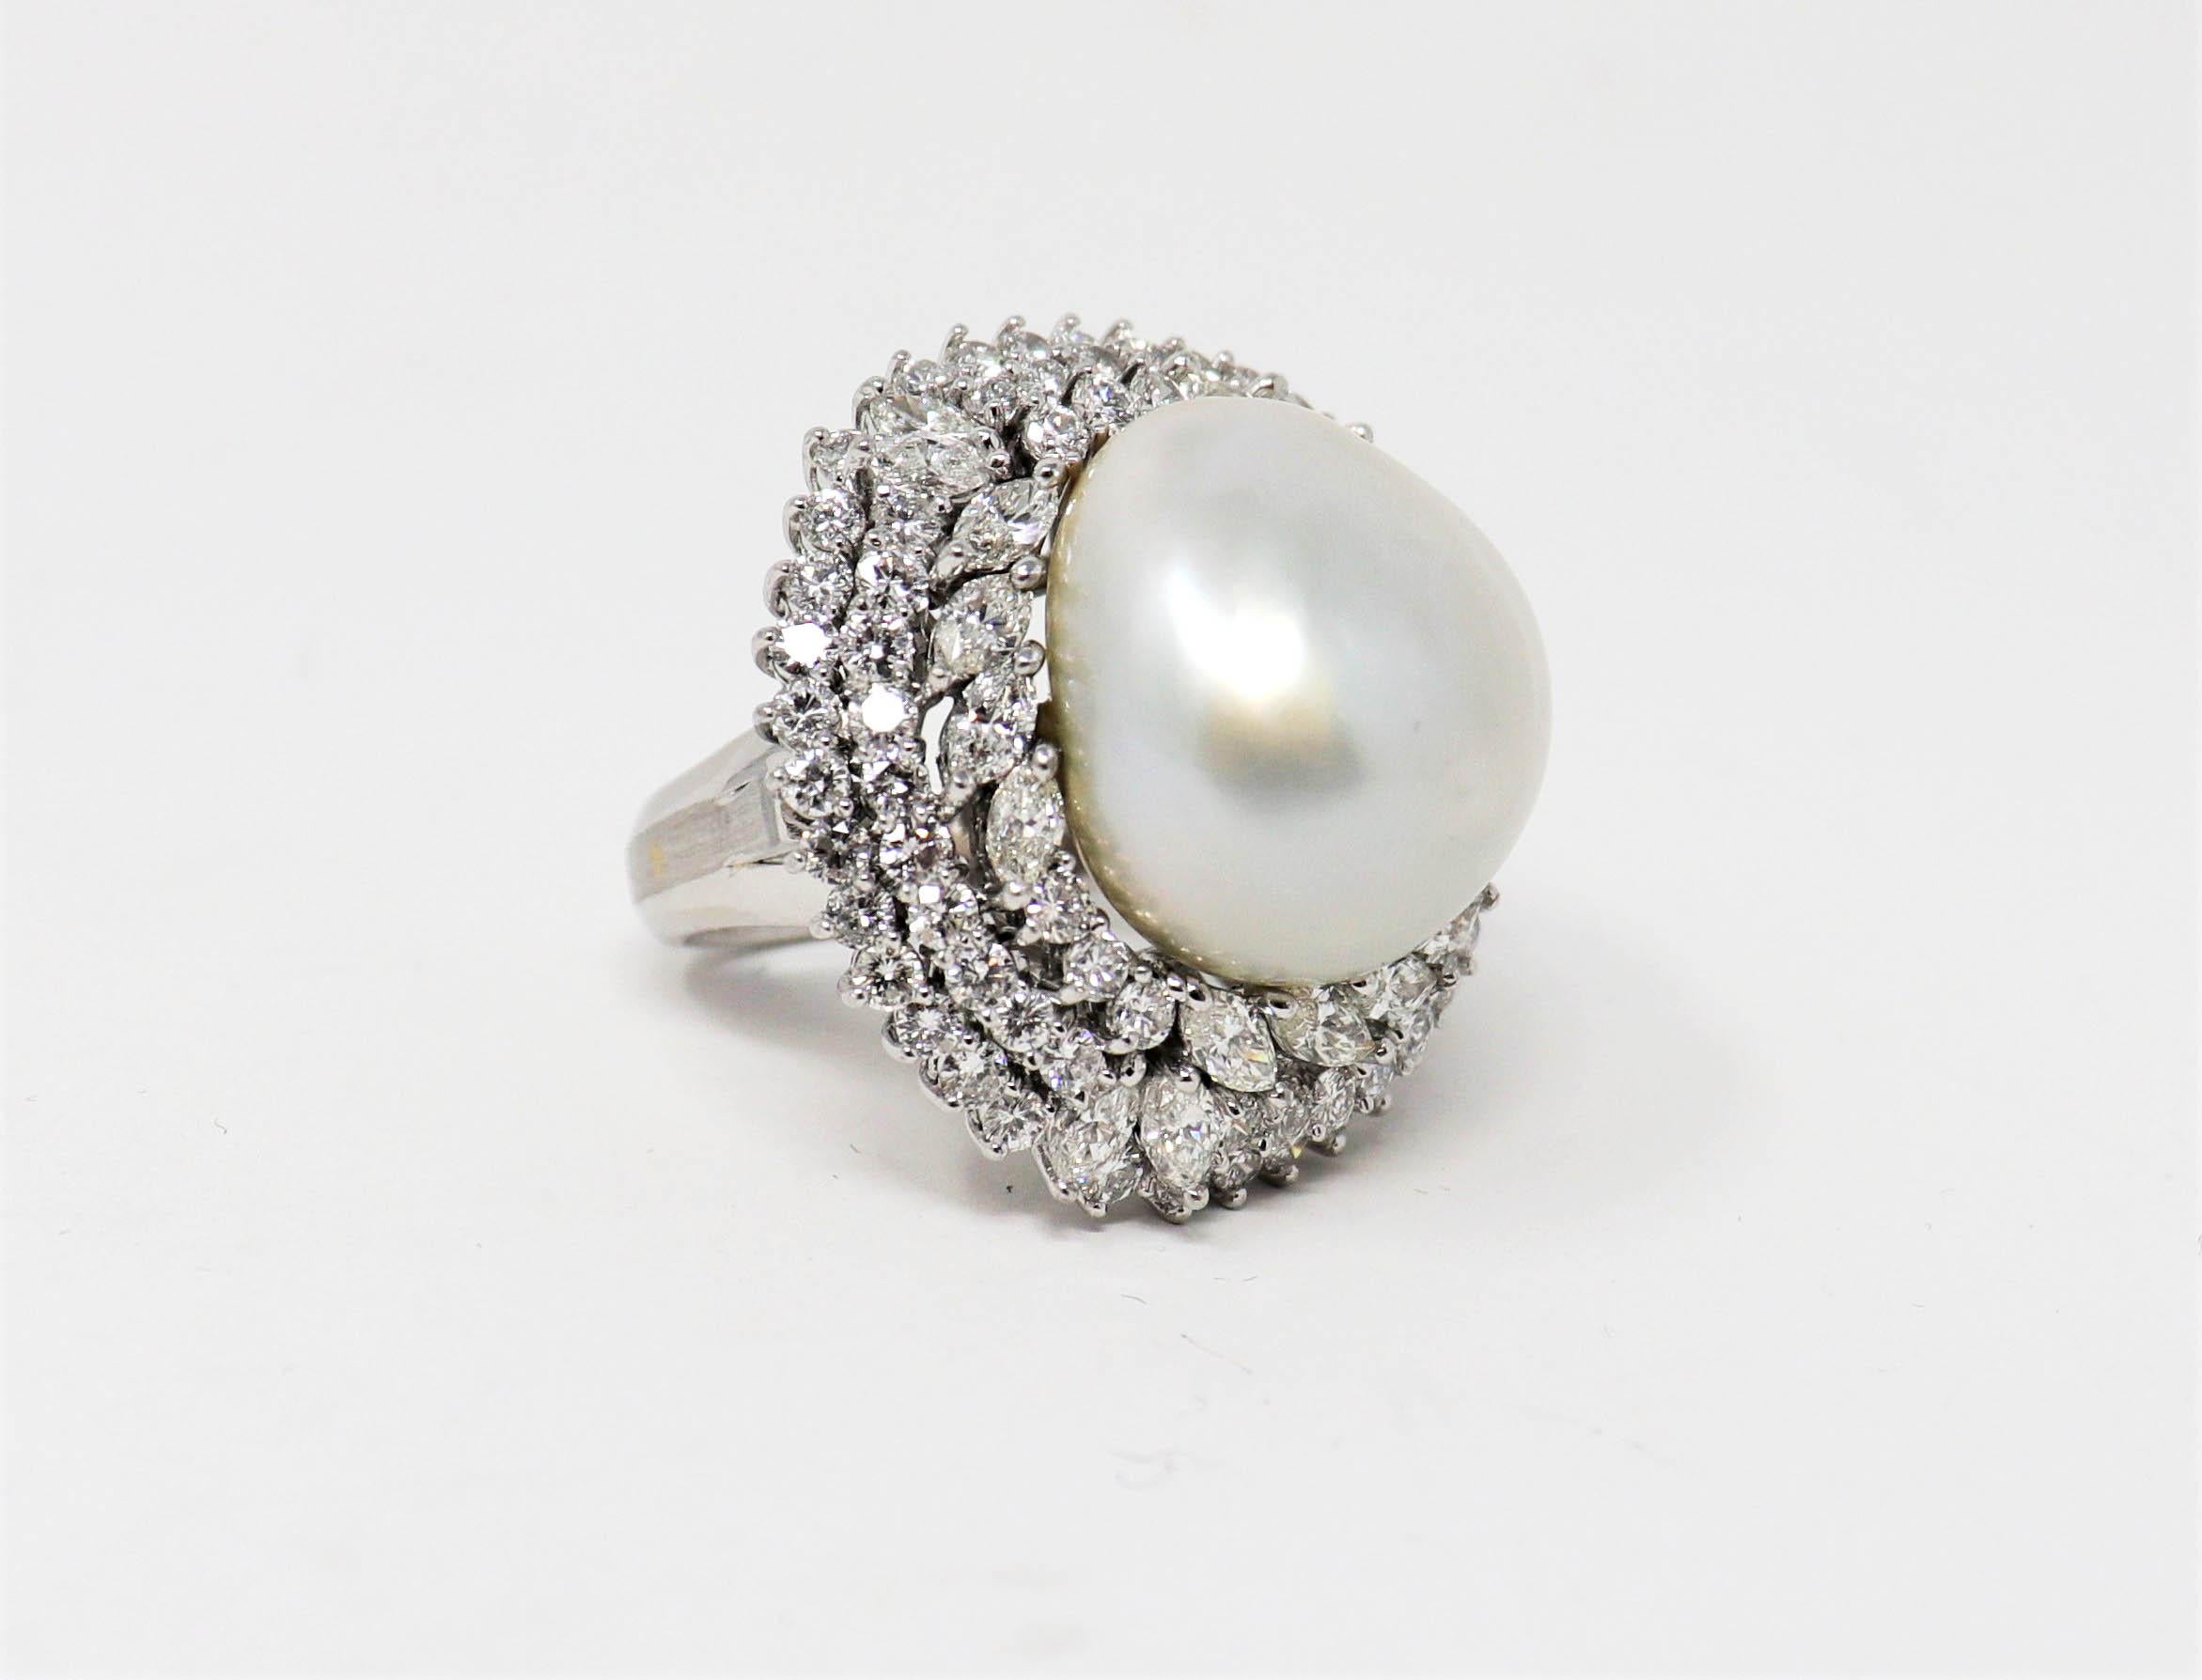 Taille de l'anneau : 7.5

Bague de cocktail ballerine en diamant et perle à couper le souffle, avec des détails d'une finesse inouïe. Des diamants scintillants sont sertis dans un triple halo et entourent une grosse perle mabe ronde, créant ainsi